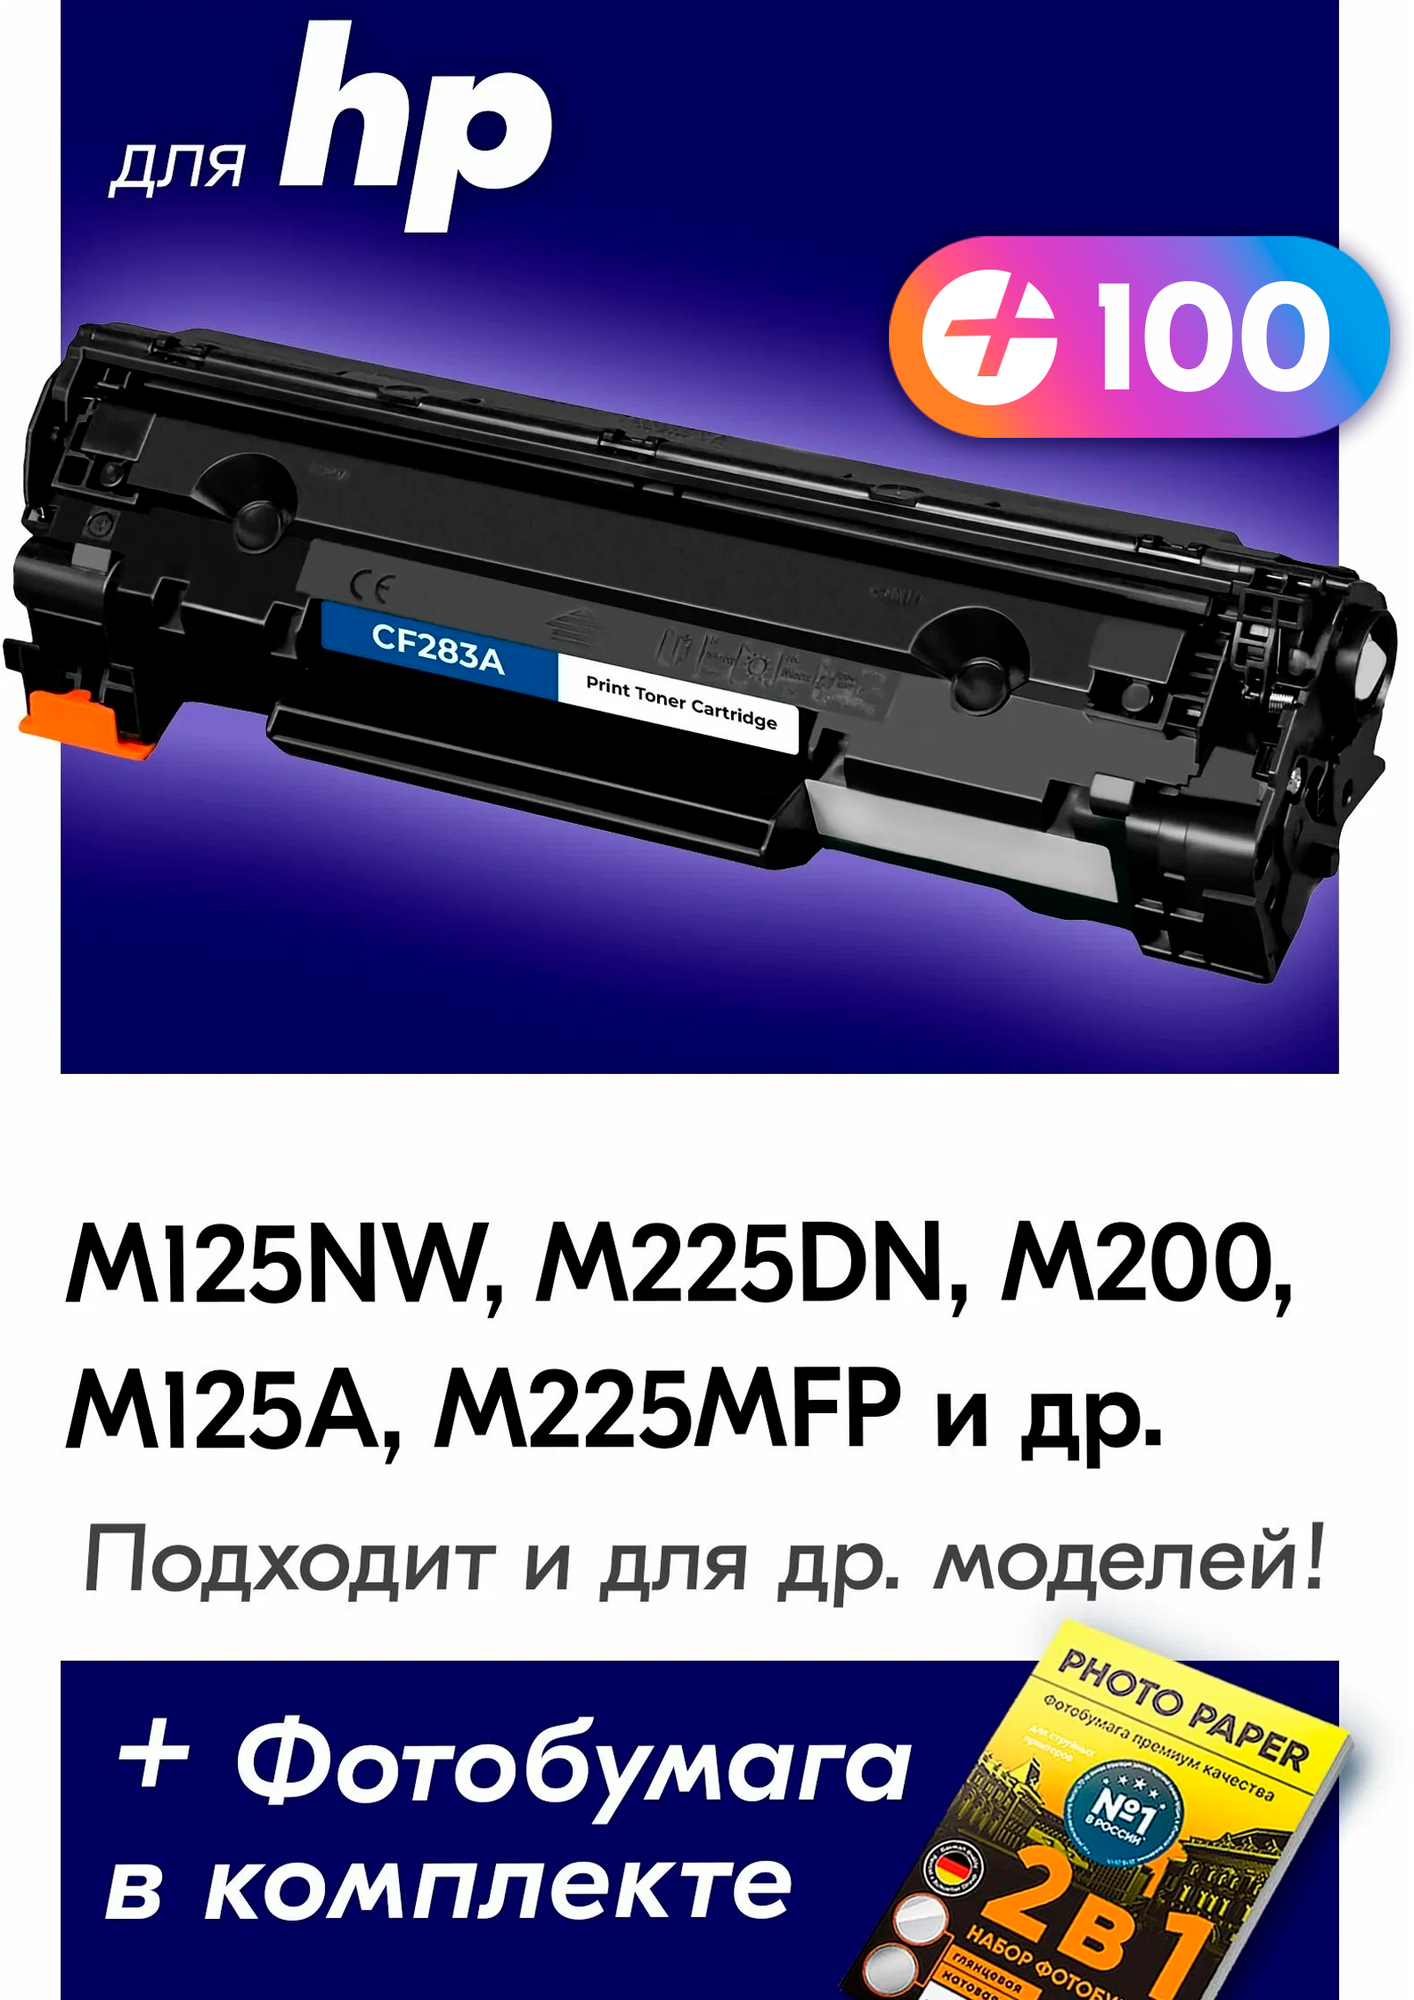 Лазерный картридж для CF283A (№ 83A), HP LaserJet M125NW, M225DN, M200, M125A и др. с краской (тонером) черный новый заправляемый, 1500 копий